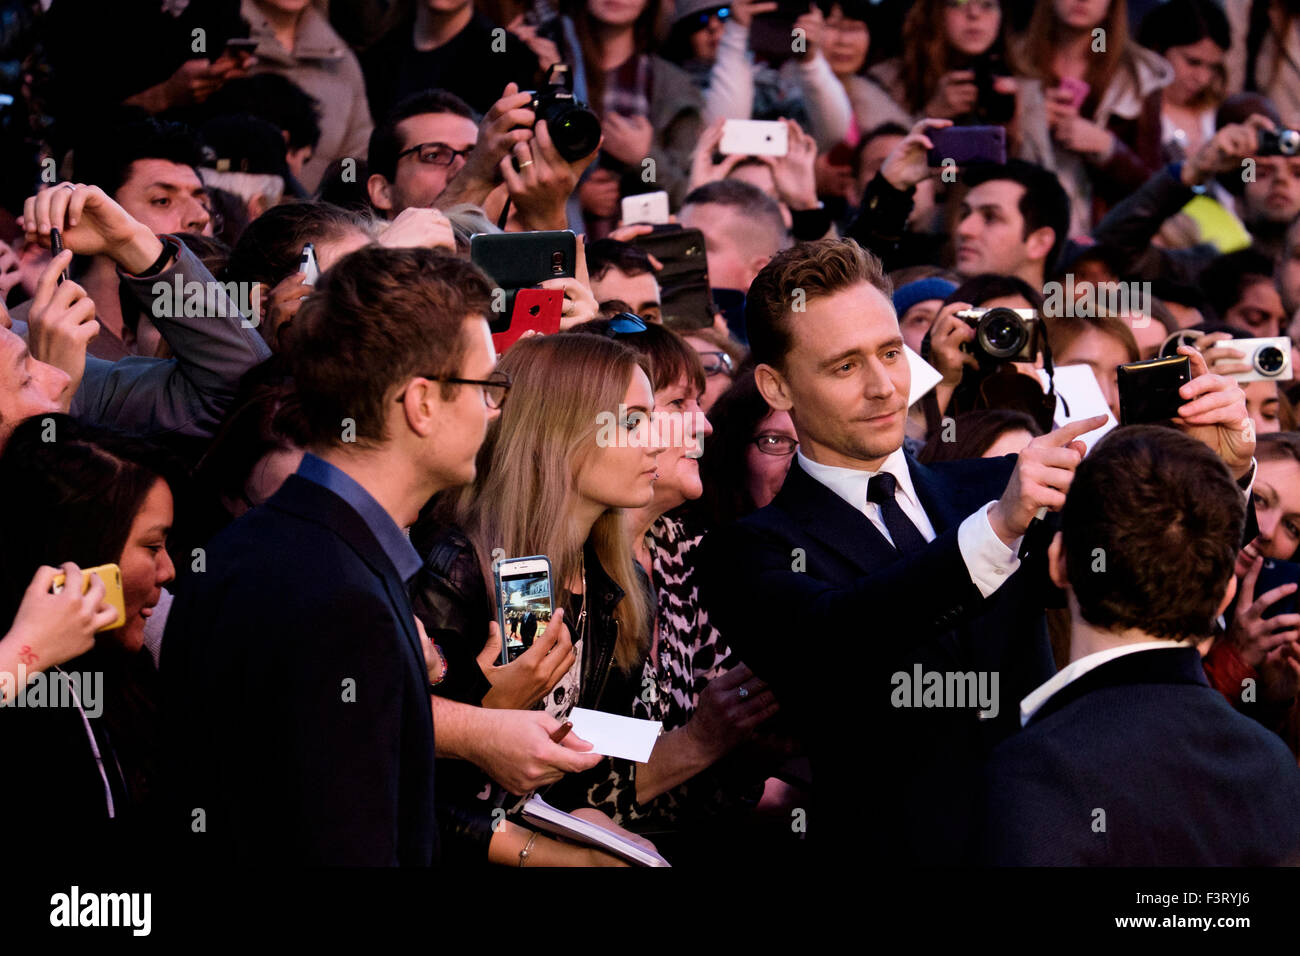 Tom Hiddleston kommt auf dem roten Teppich für das London Film Festival Screening der High Rise auf 10.09.2015 im ODEON Leicester Square, London. Bild von Julie Edwards Stockfoto